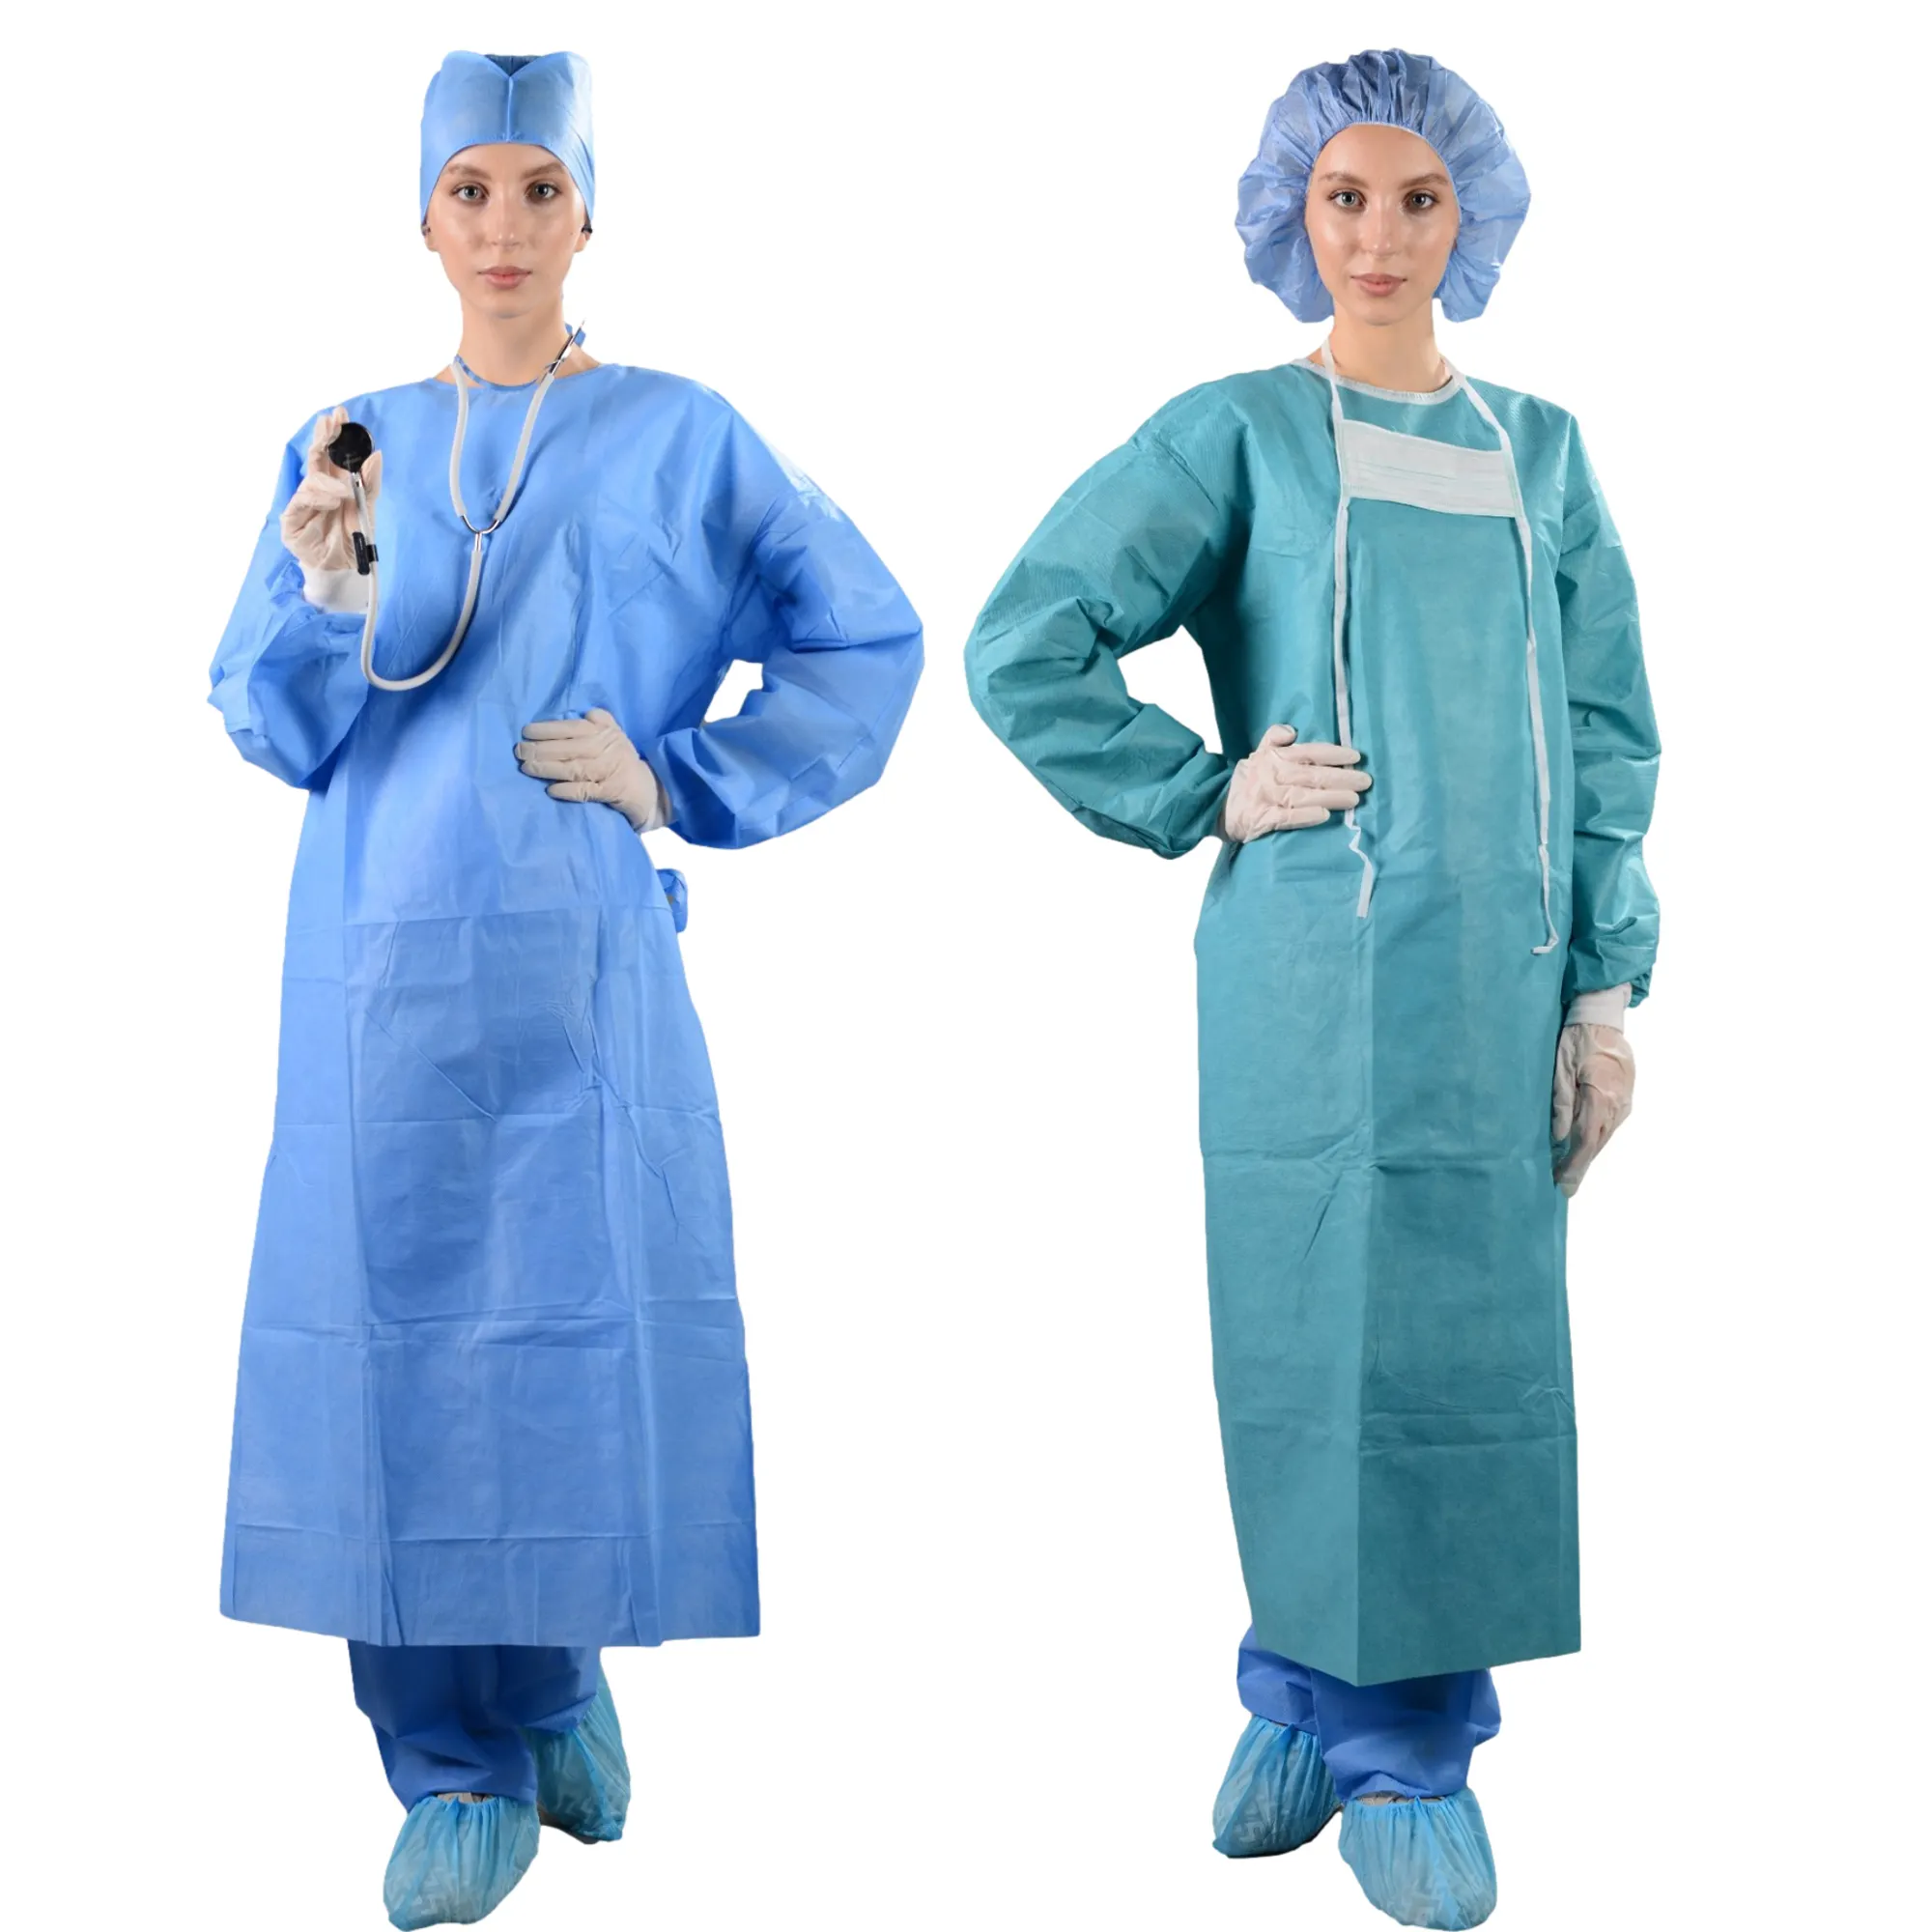 A saisir! Robe chirurgicale SMS/robes et rideaux chirurgicaux stériles jetables avec niveau 3